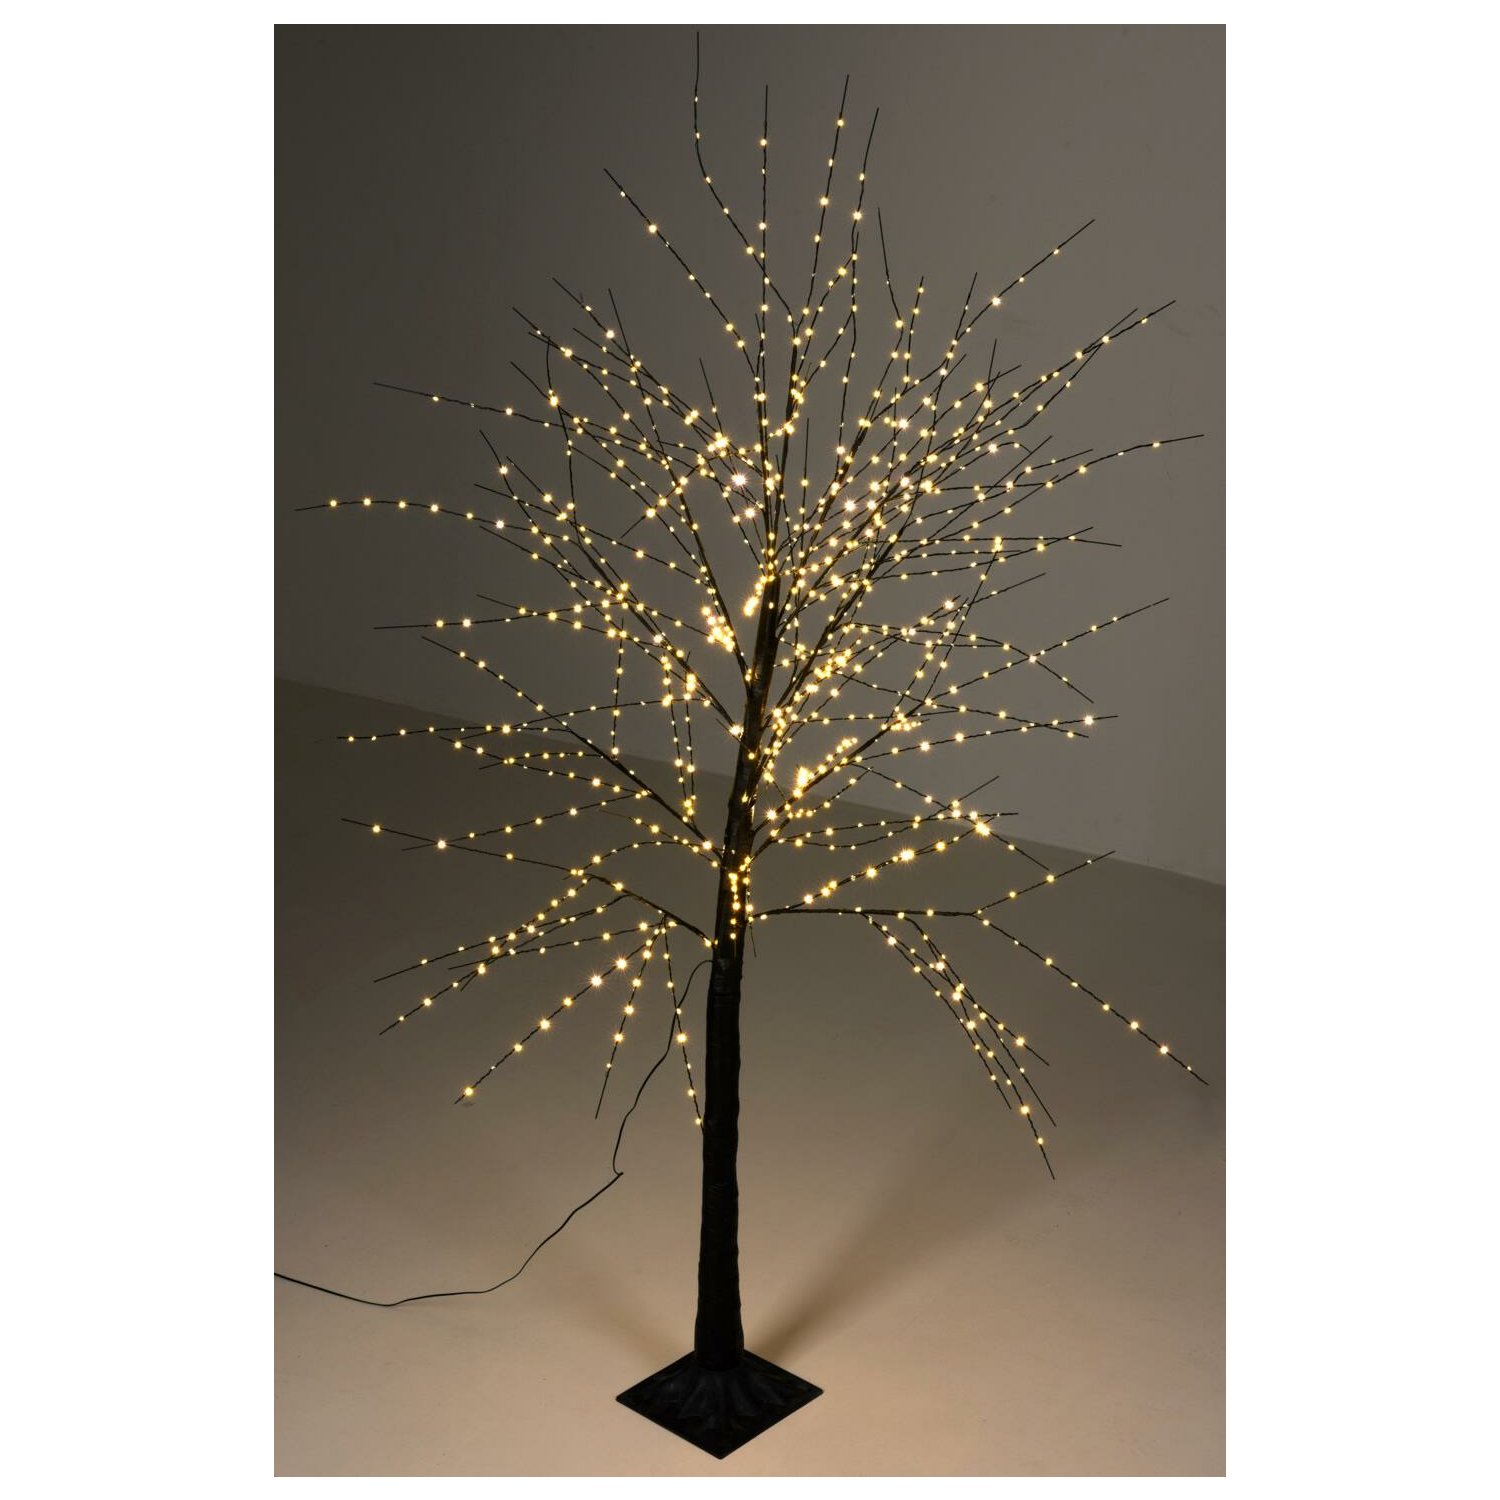 https://www.onshop24.eu/media/image/product/7065/lg/lichterbaum-840-led-warmweiss-180-cm-silhouette-beleuchteter-baum-weihnachtsbeleuchtung-innen-aussen.jpg